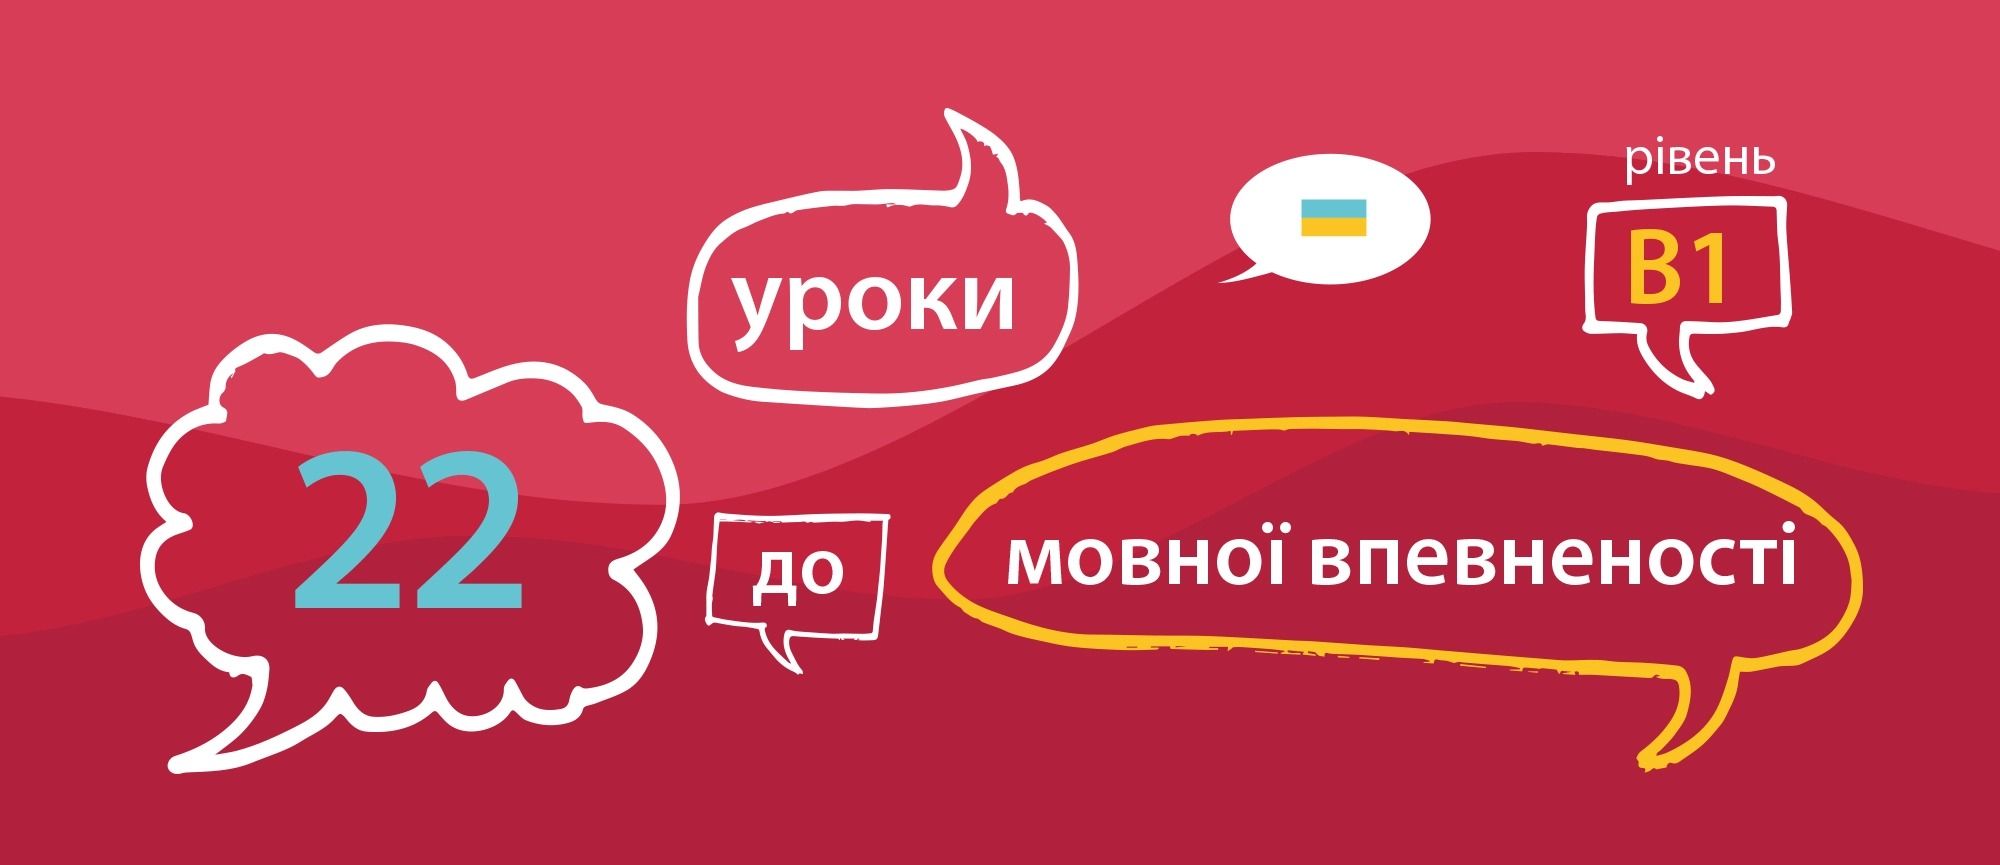 9 листопада – старт курсу з української мови «22 уроки до мовної впевненості»